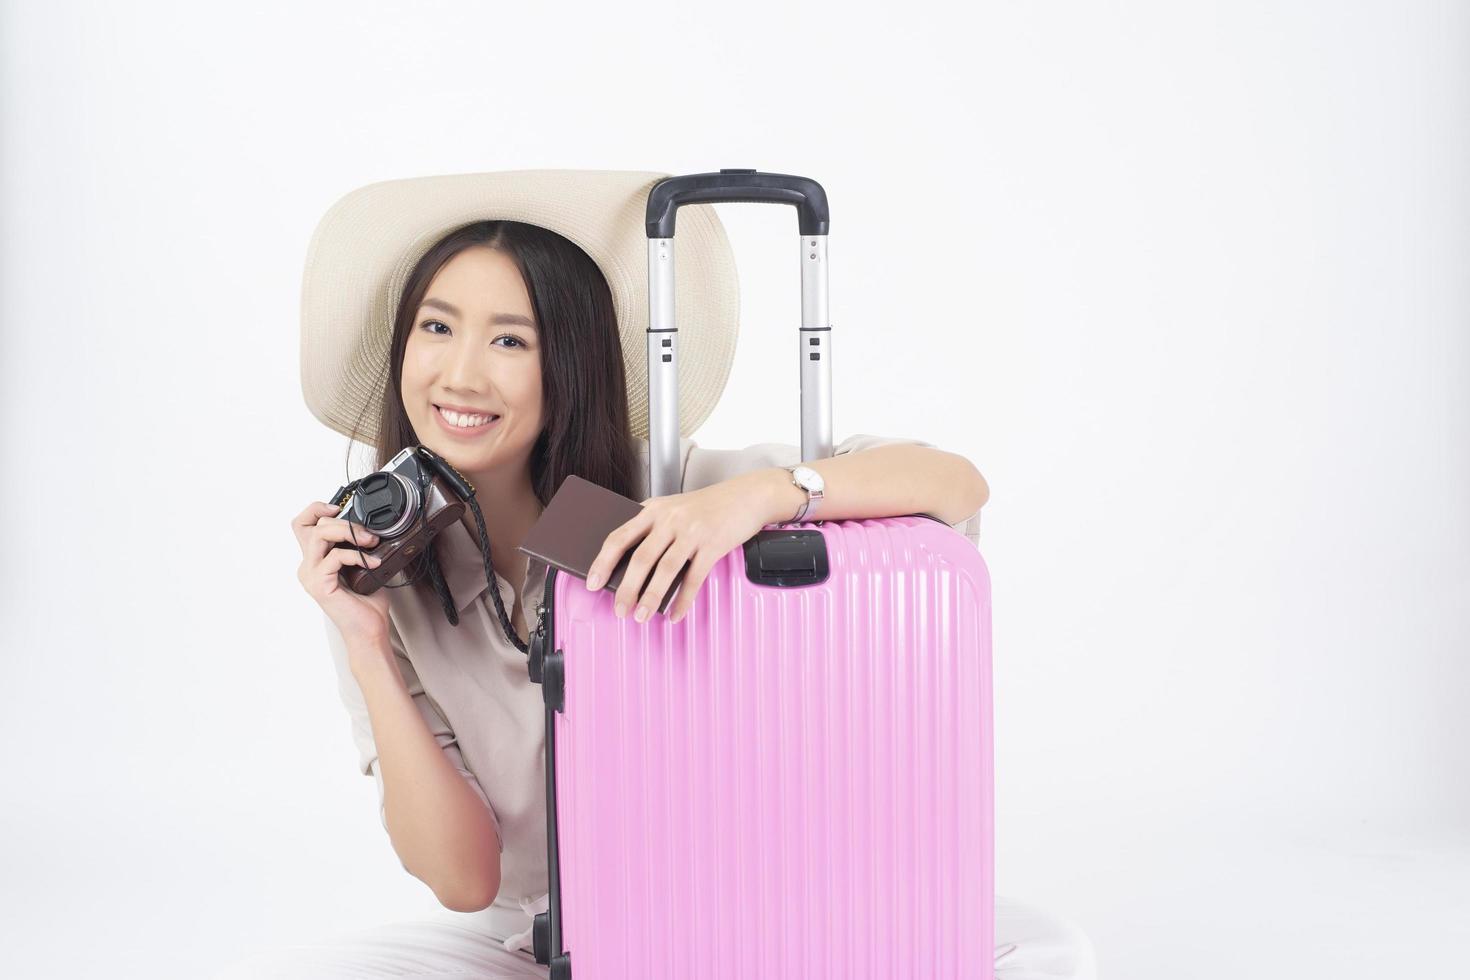 Beautiful Asian woman tourist  on white background photo